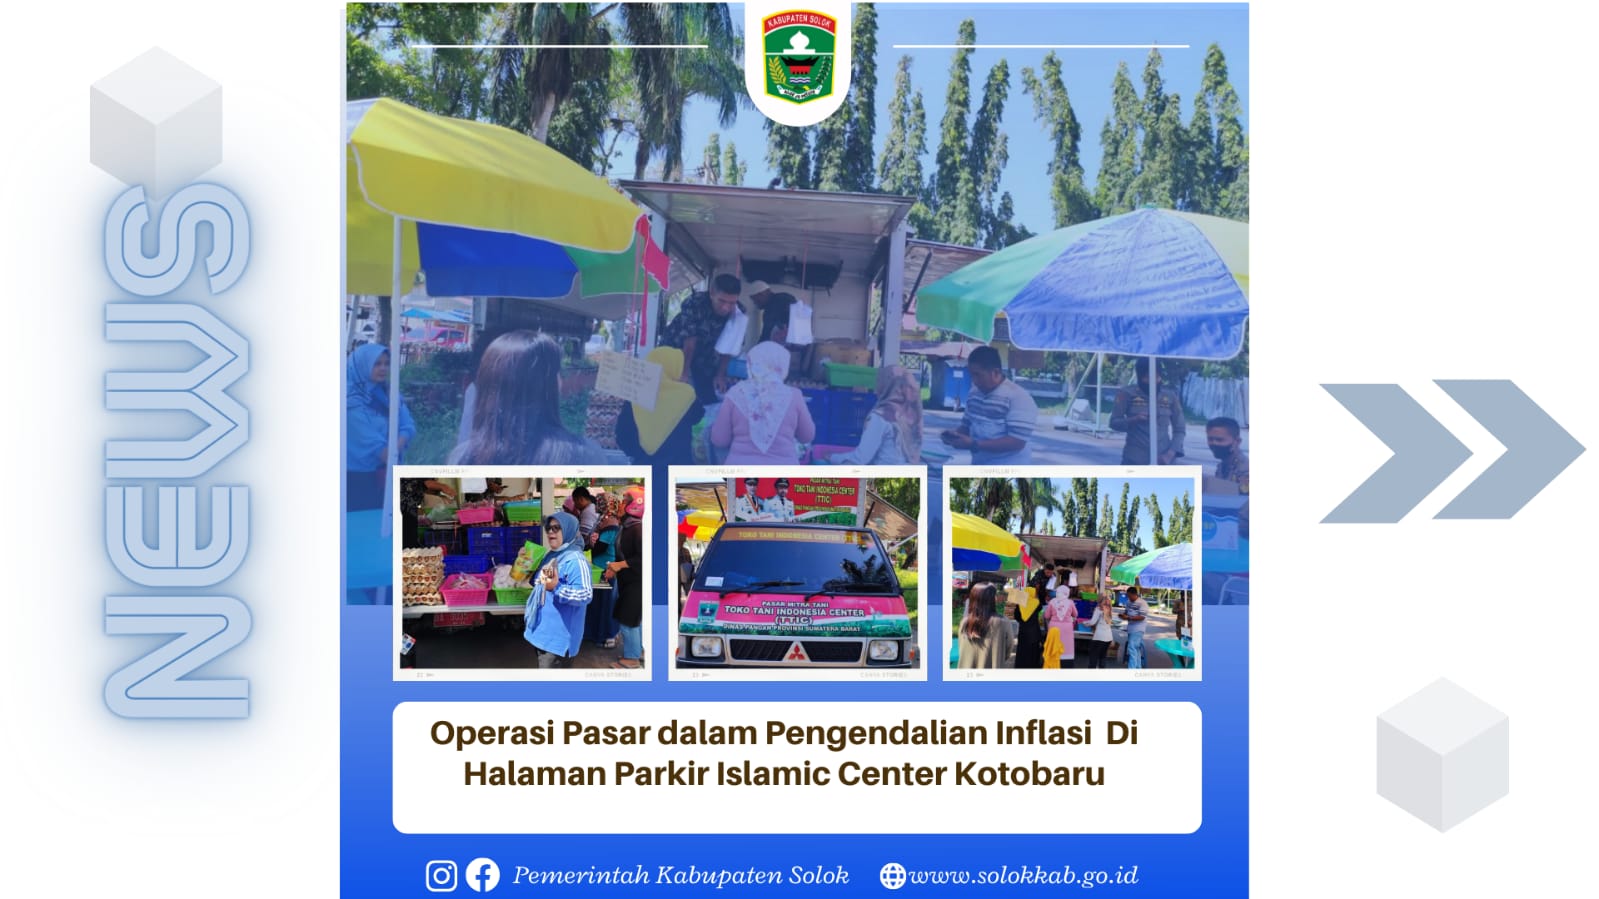 Operasi Pasar Dalam Pengendalian Inflasi di Halaman Parkir Masjid Islamic Centere Kotobaru